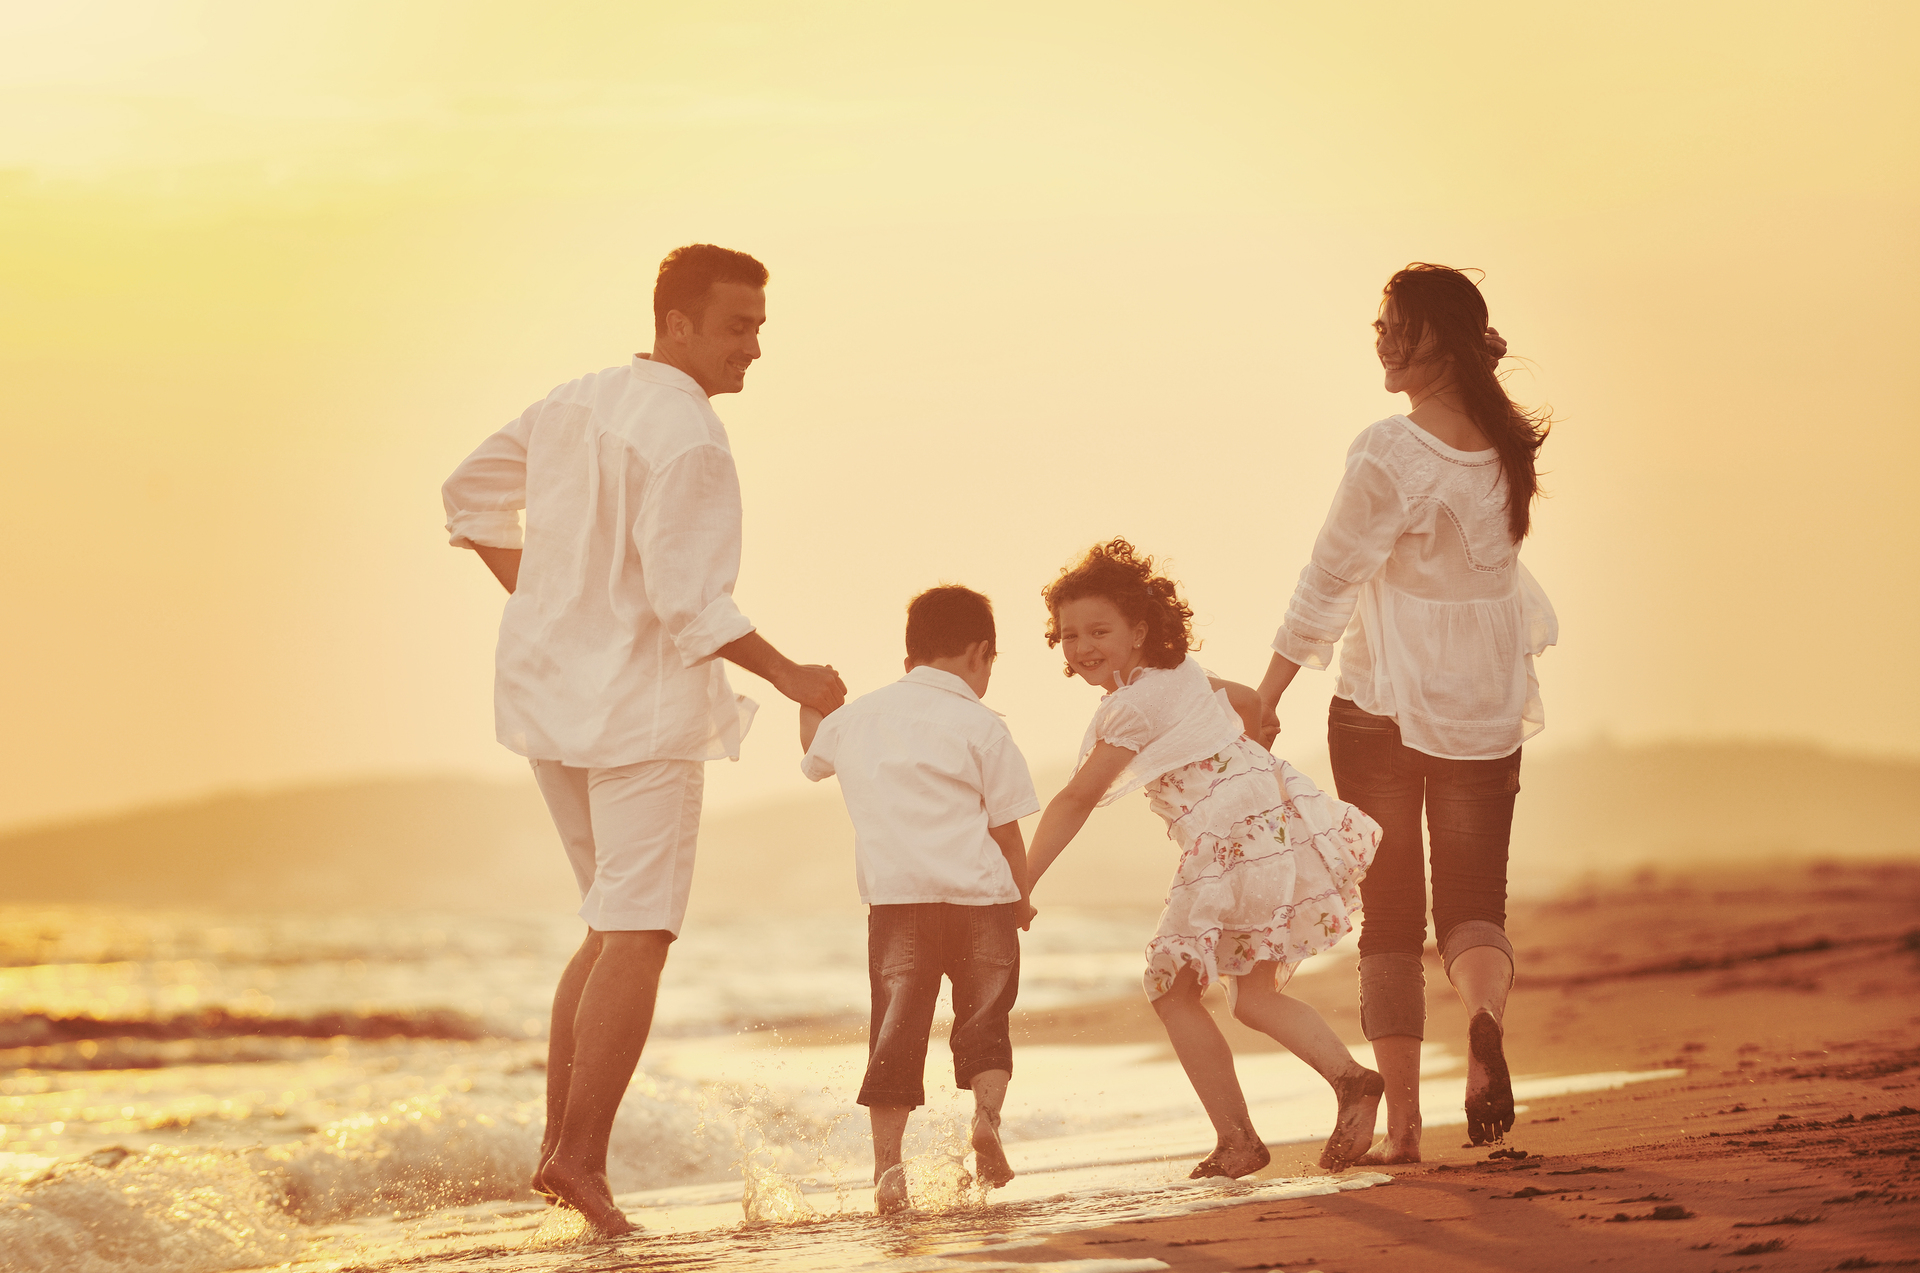 Na zdjęciu widoczna jest tradycyjna rodzina podczas spaceru po plaży. W skład rodziny wchodzą rodzice i dwoje dzieci, którzy trzymają się za ręce i uśmiechają się do siebie. W tle widać piękne, malownicze krajobrazy, co dodaje uroku temu rodzinnemu spacerowi. Taki obrazek przypomina nam o wartościach rodzinnych i pokazuje, jak ważne jest spędzanie czasu razem, zwłaszcza na łonie natury.